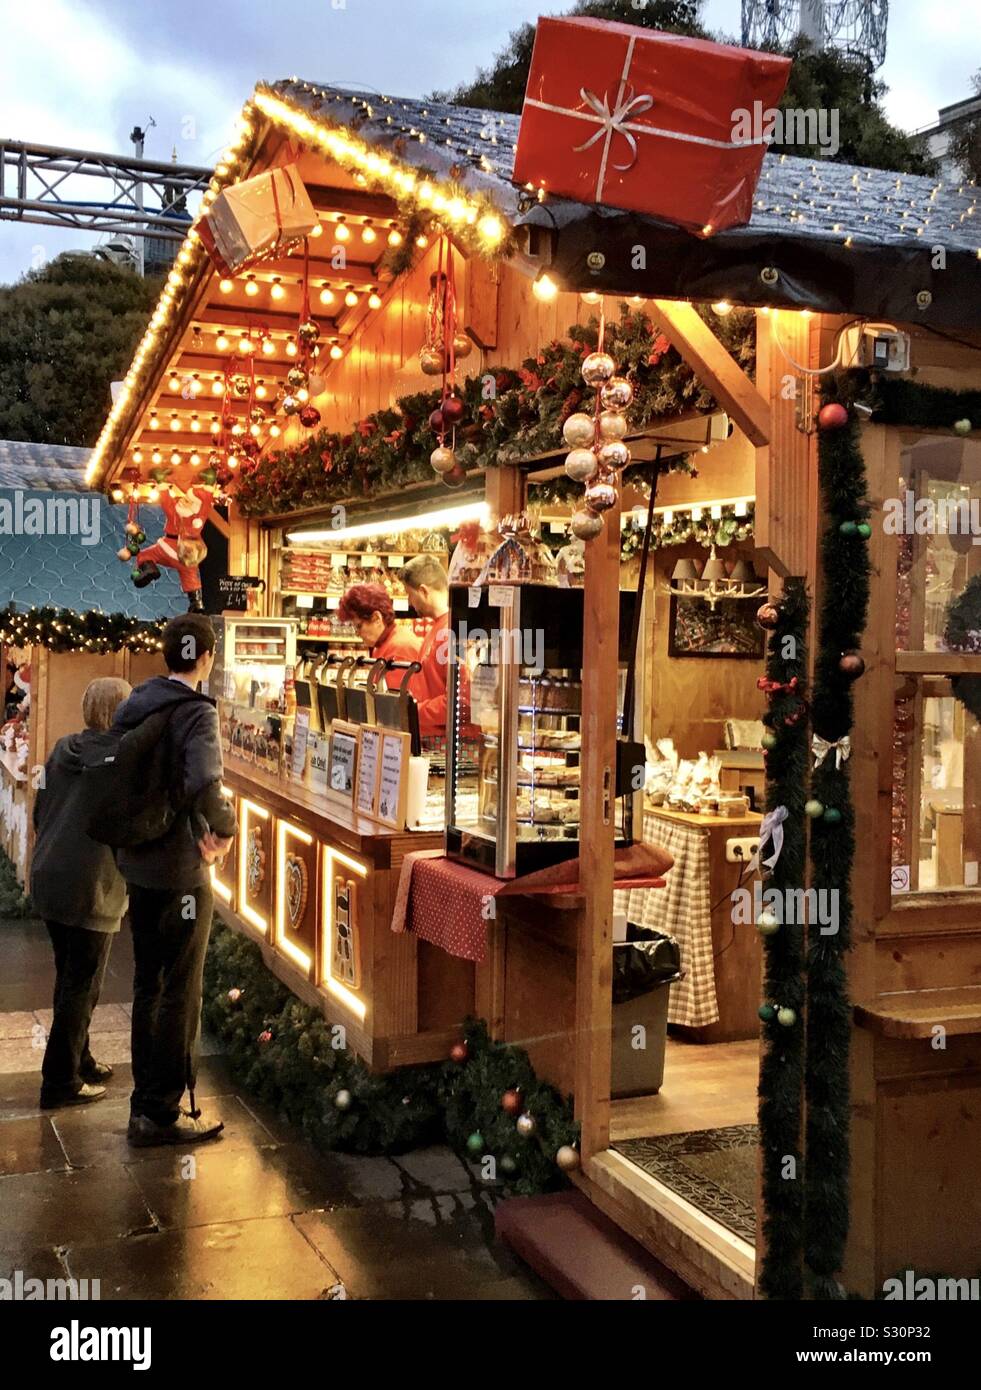 La parte alemana del Mercado de Navidad en Leeds, West Yorkshire, Reino Unido el 13 de diciembre, 2019. Este mercado es un evento popular y regular y está situado en la plaza del Milenio y cerca del Civic Hall. Foto de stock